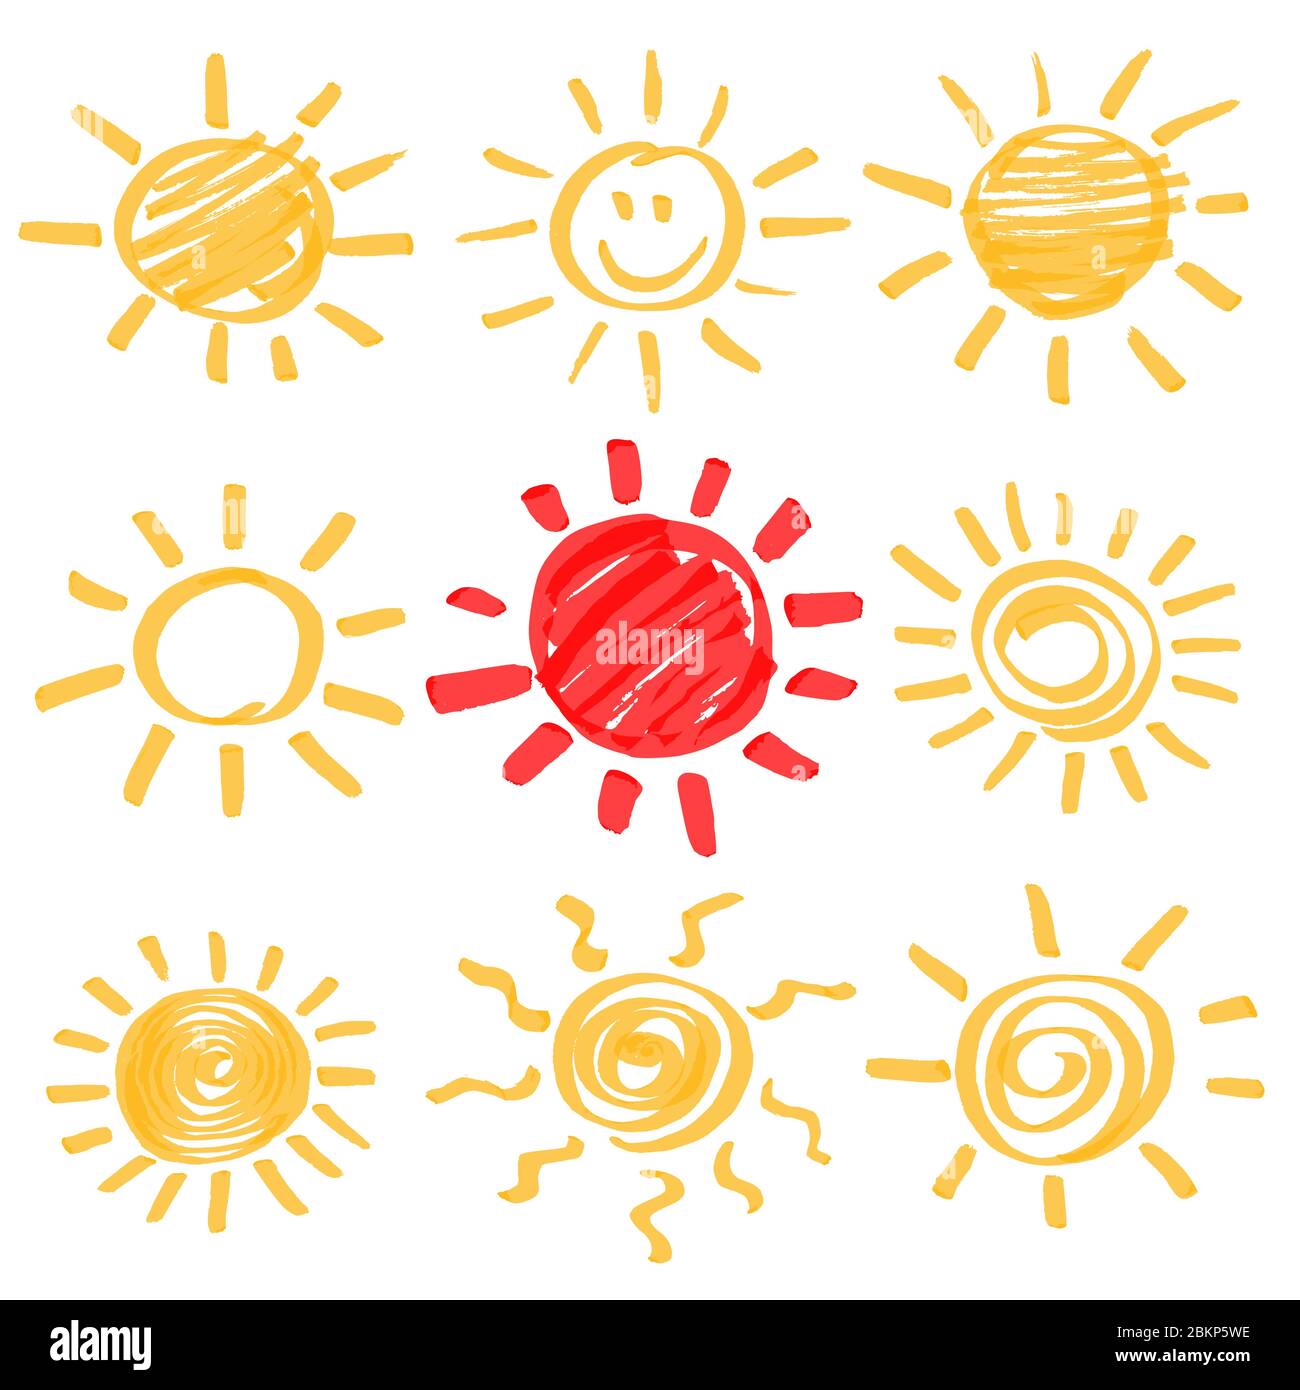 Jeu d'éléments de conception de soleil d'été de marqueur de surligneur. Symboles soleil dessinés à la main par des surligneurs jaunes et rouges. Optimisé pour faciliter les changements de couleur. Vecteur Illustration de Vecteur